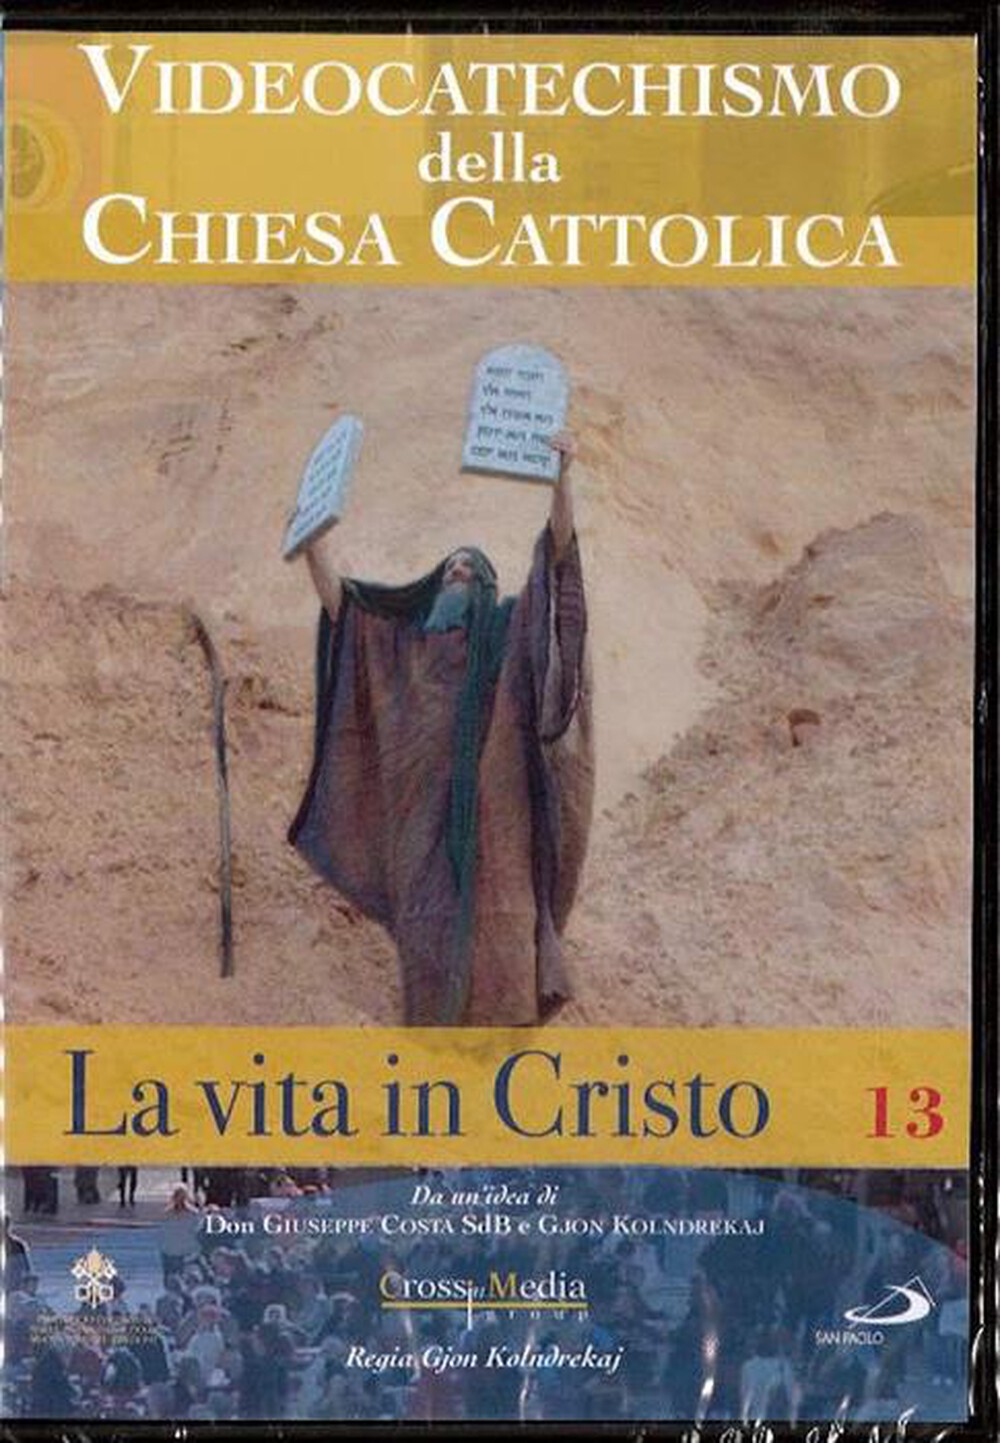 "SAN PAOLO - Videocatechismo #13 - Vita Di Cristo #04"